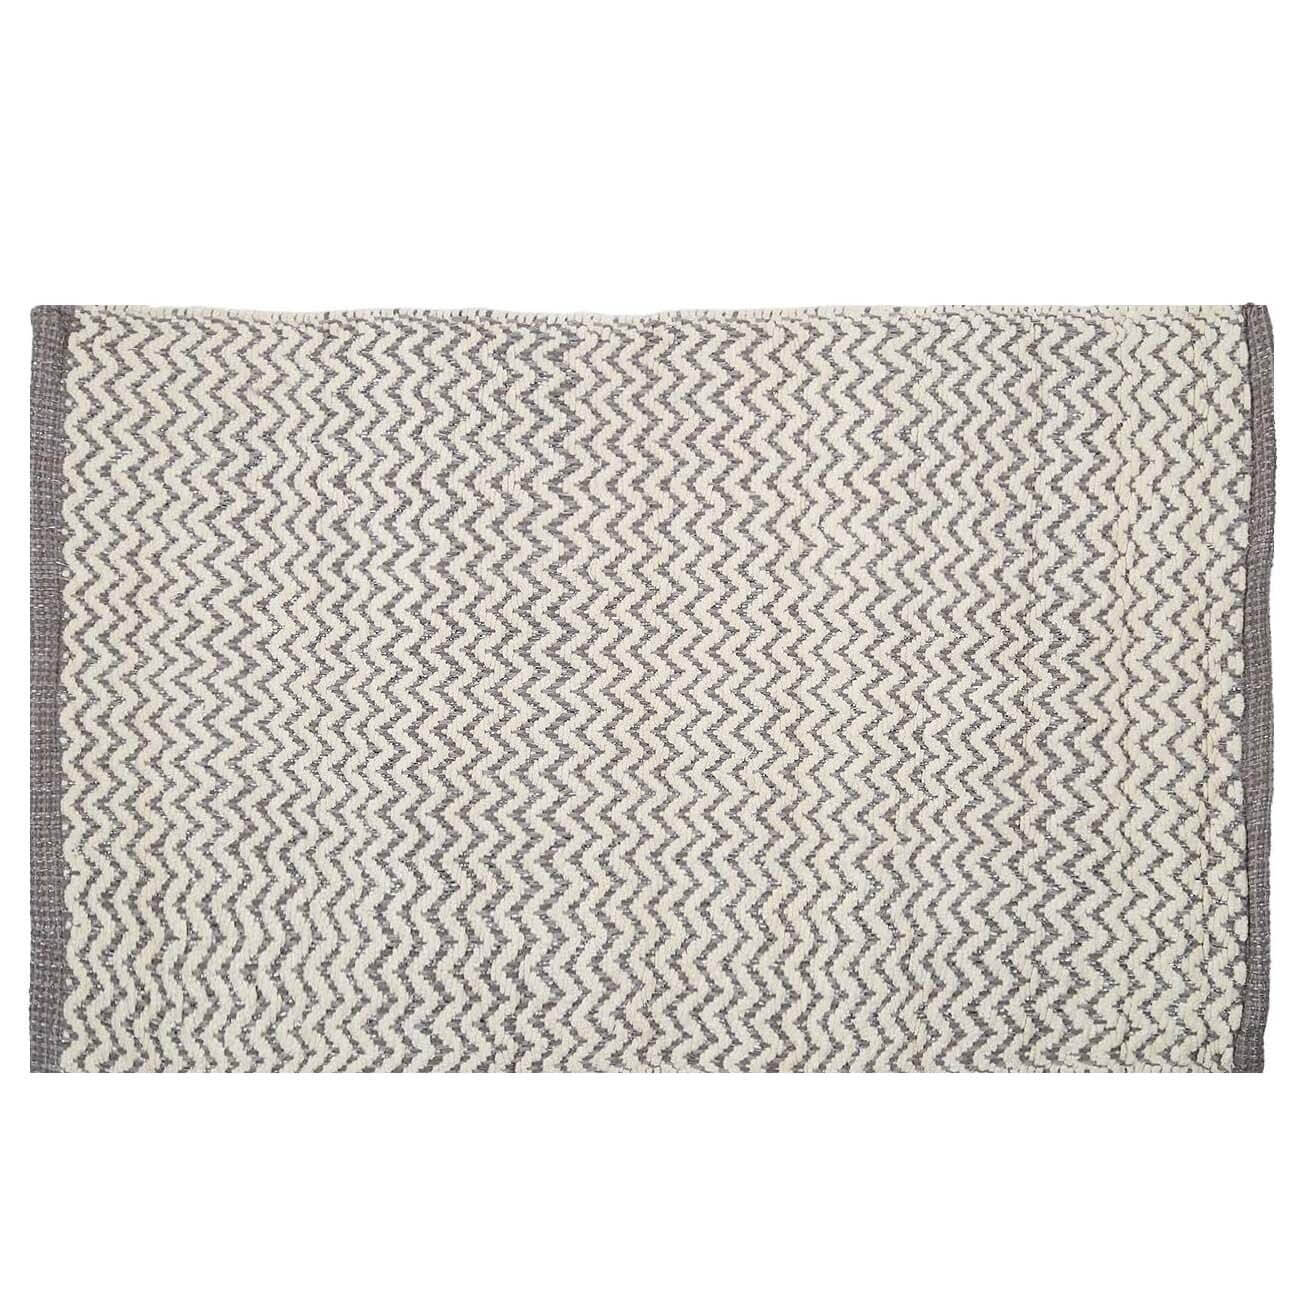 Коврик, 50х80 см, хлопок, бело-серый, Зигзаги с люрексом, Shiny threads развивающий коврик музыкальный